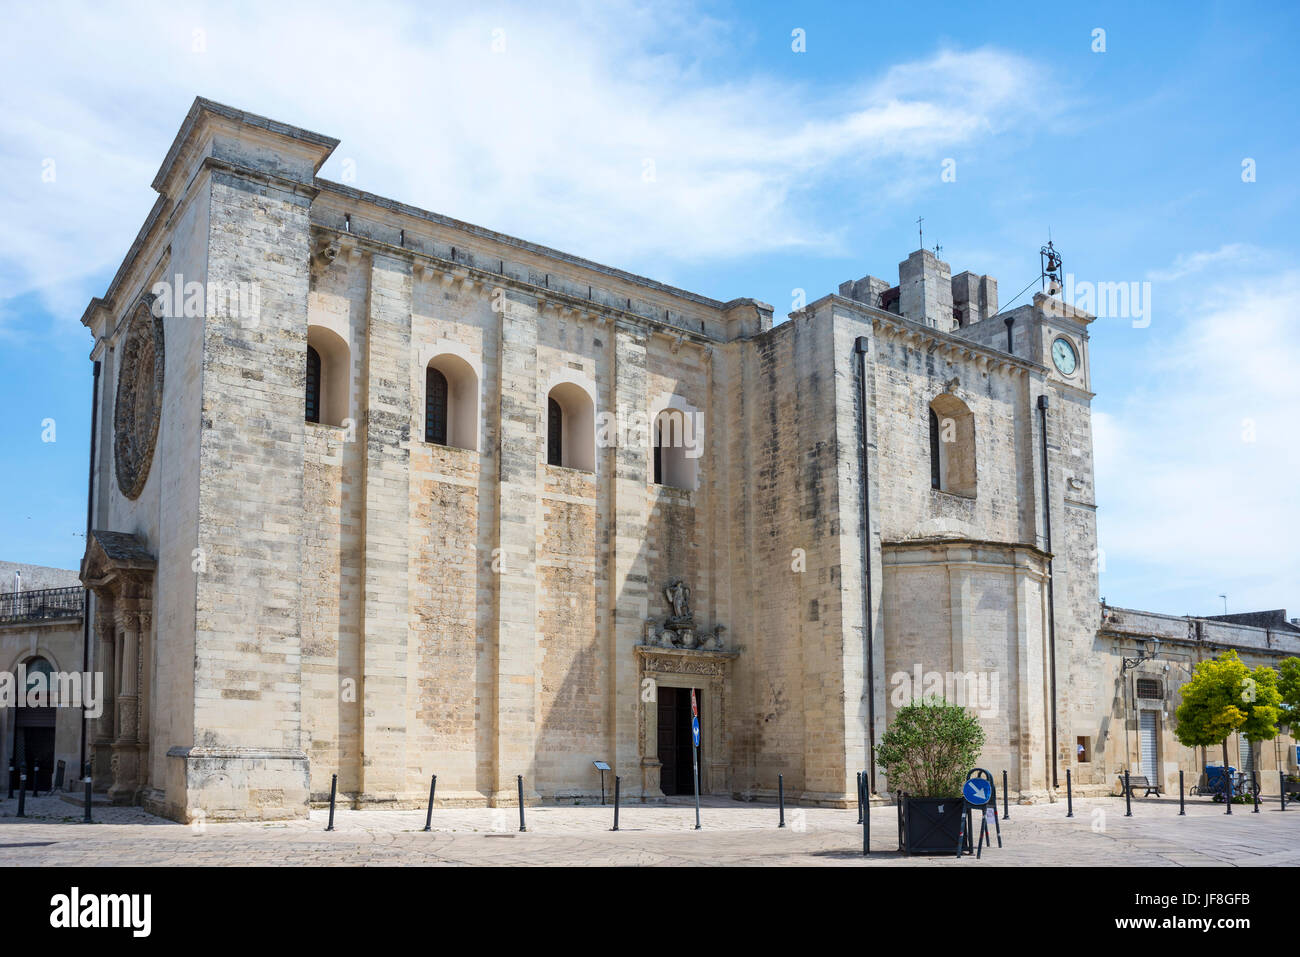 Parish church in the village of Minervino di Lecce, Puglia, Italy Stock Photo